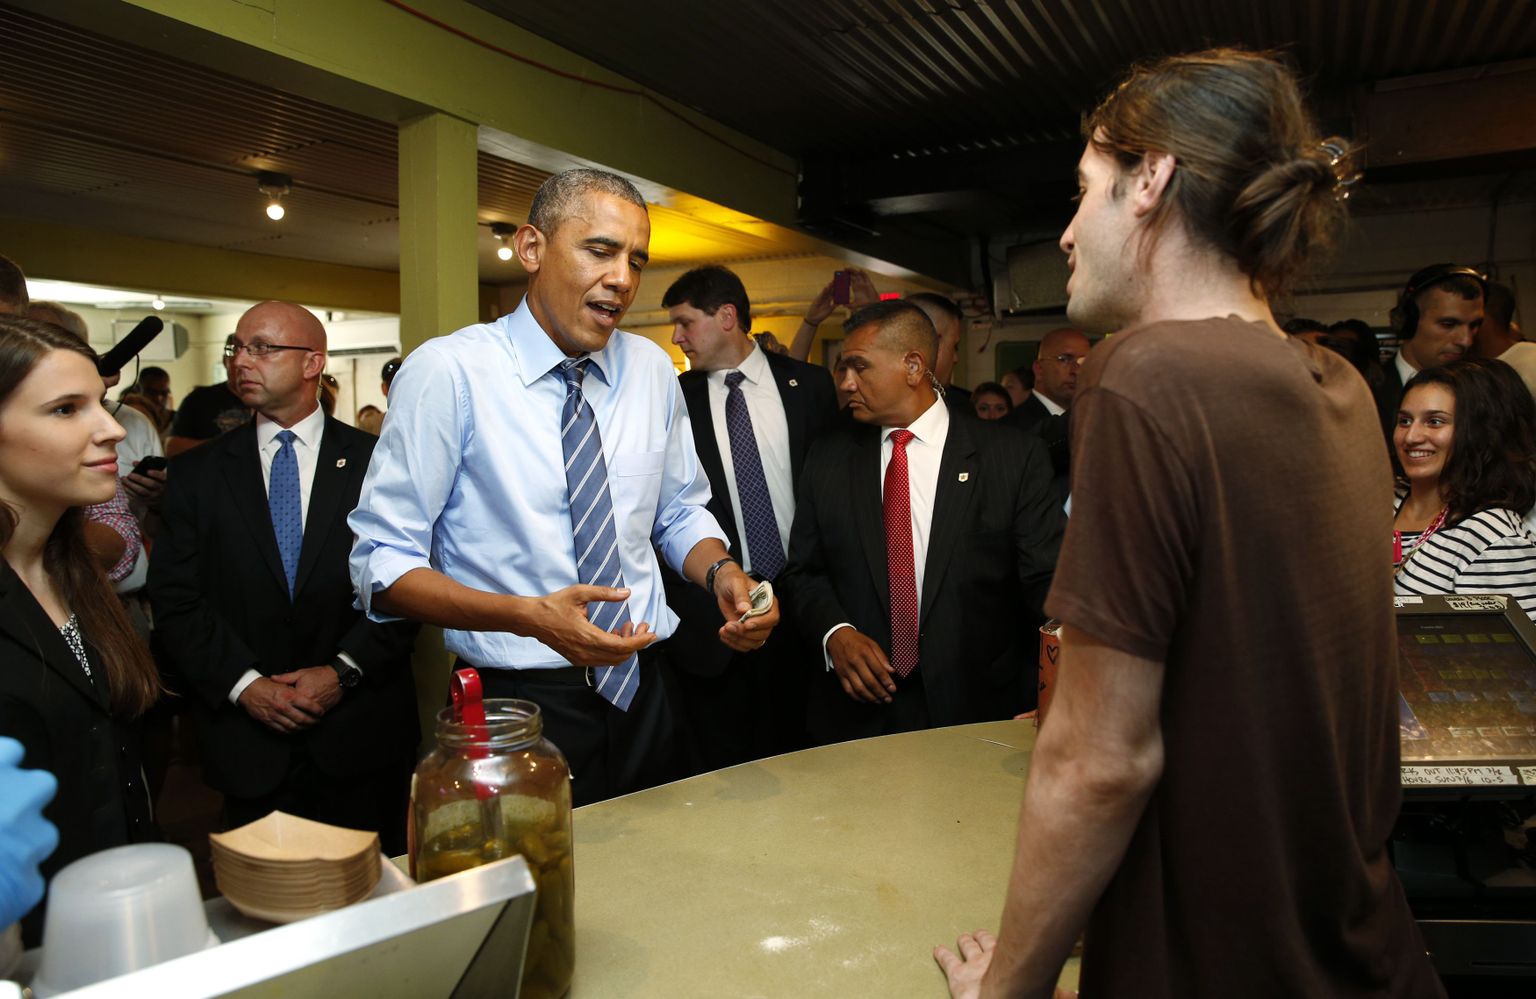 Barack Obama  Austinis Franklin Barbecues